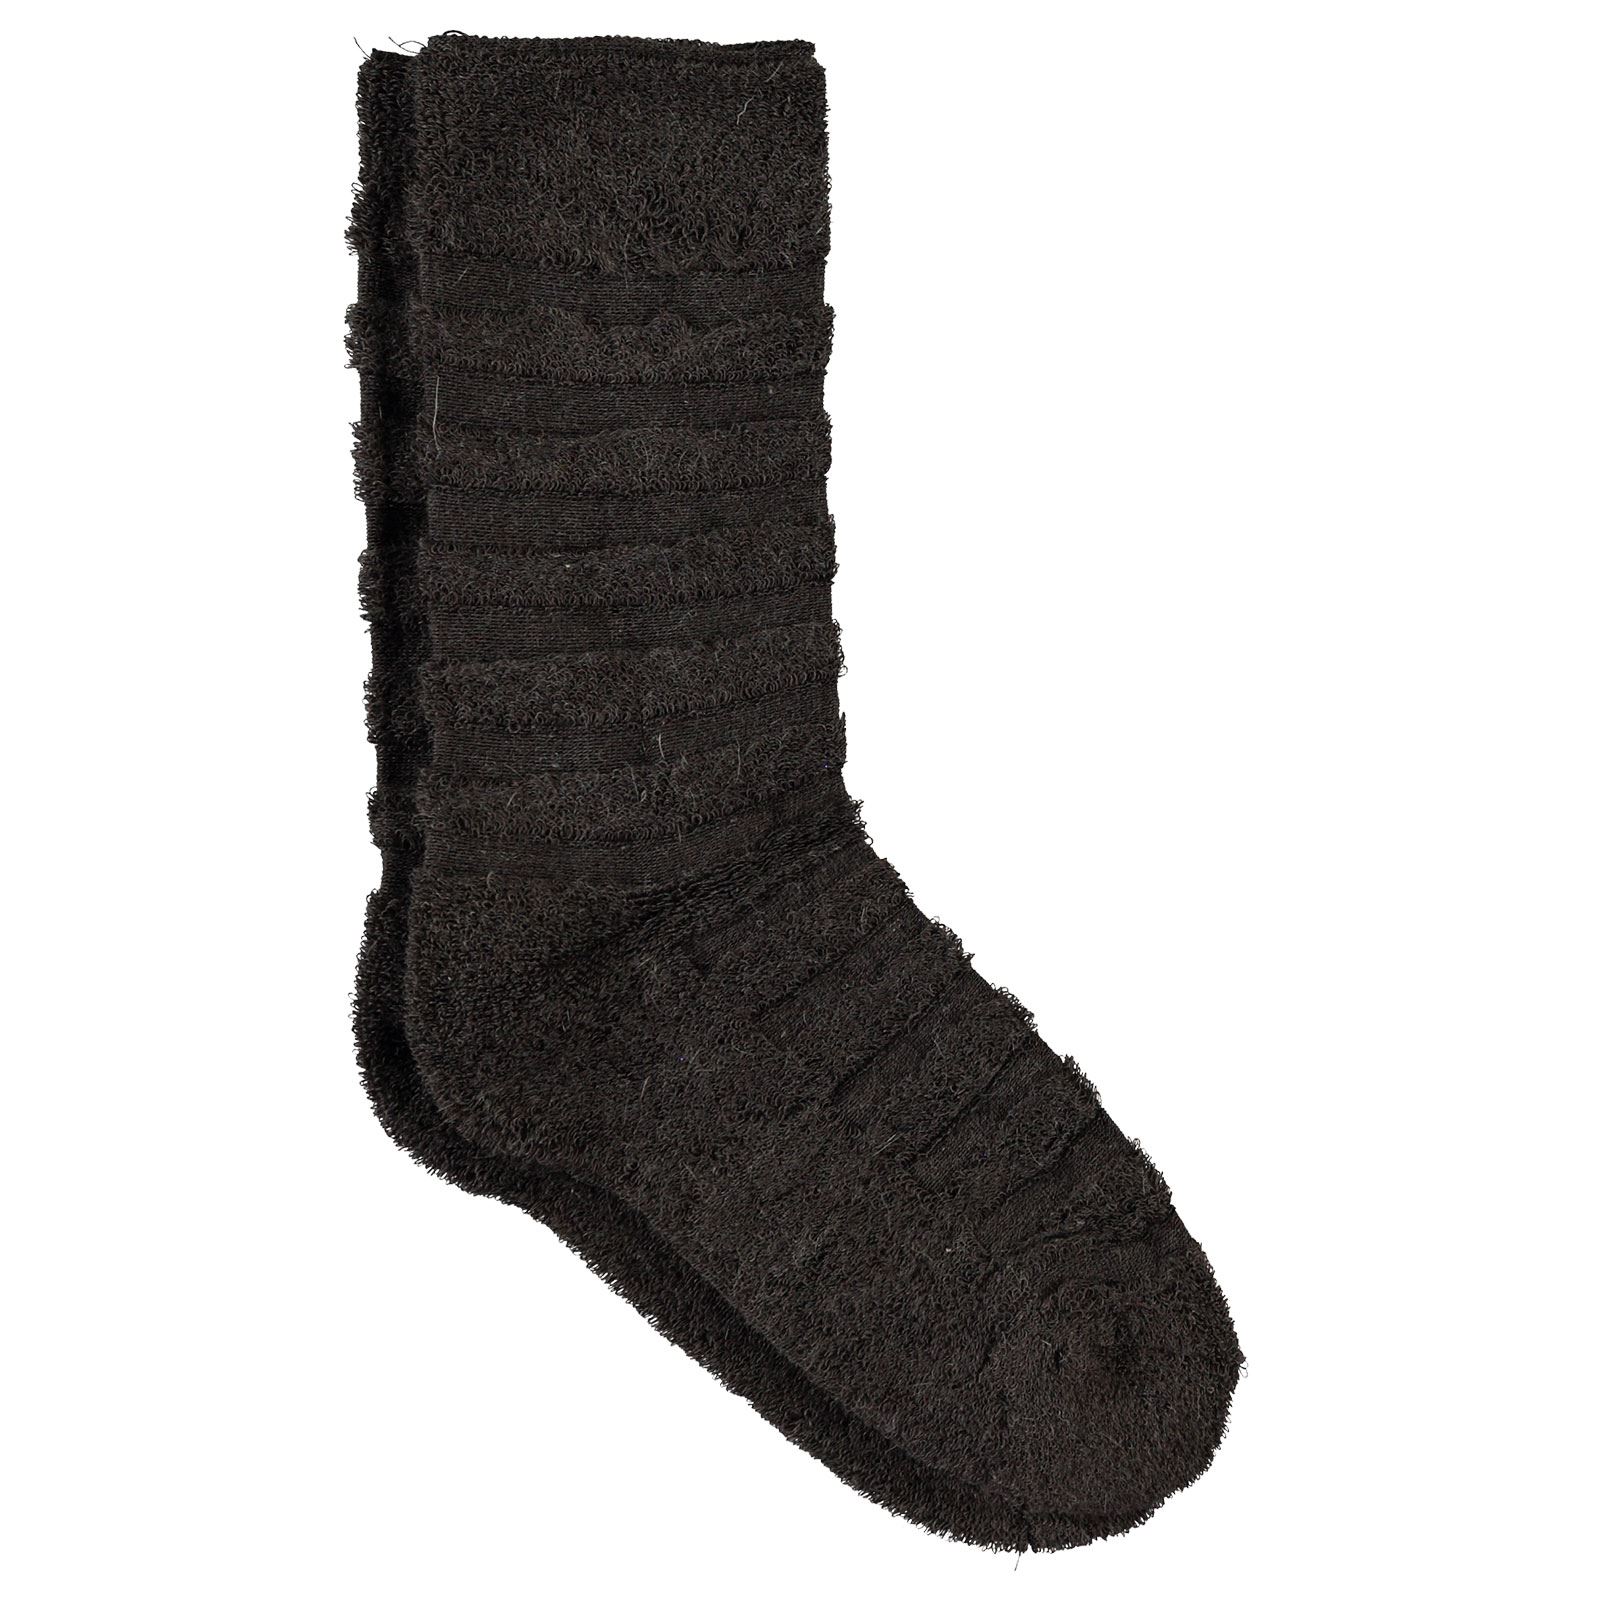 Bella Calze Kız Çocuk Ters Havlu Soket Çorap 36-40 Numara Koyu Kahverengi